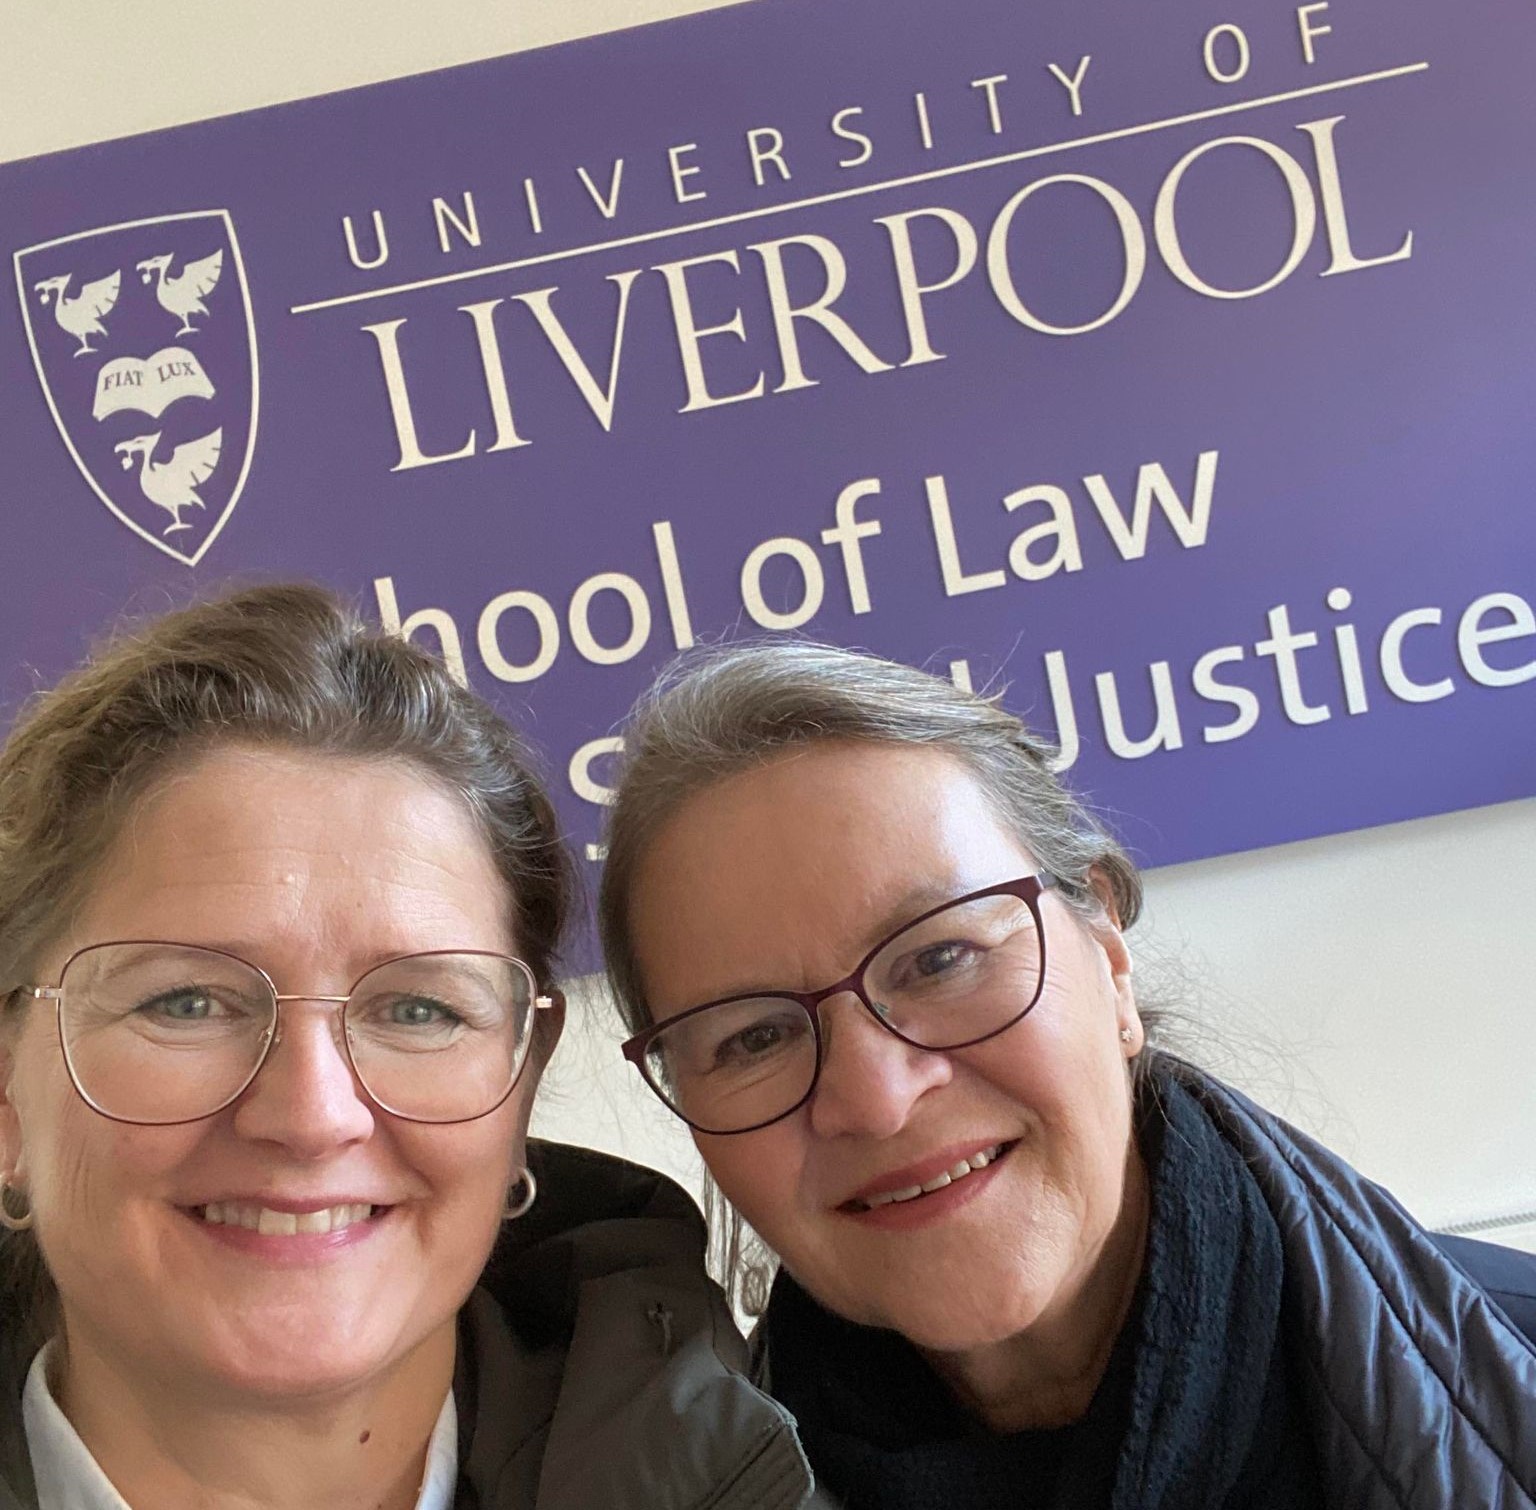 Et selfiefoto av Trude og Lena, med et Law school-banner i bakgrunnen.